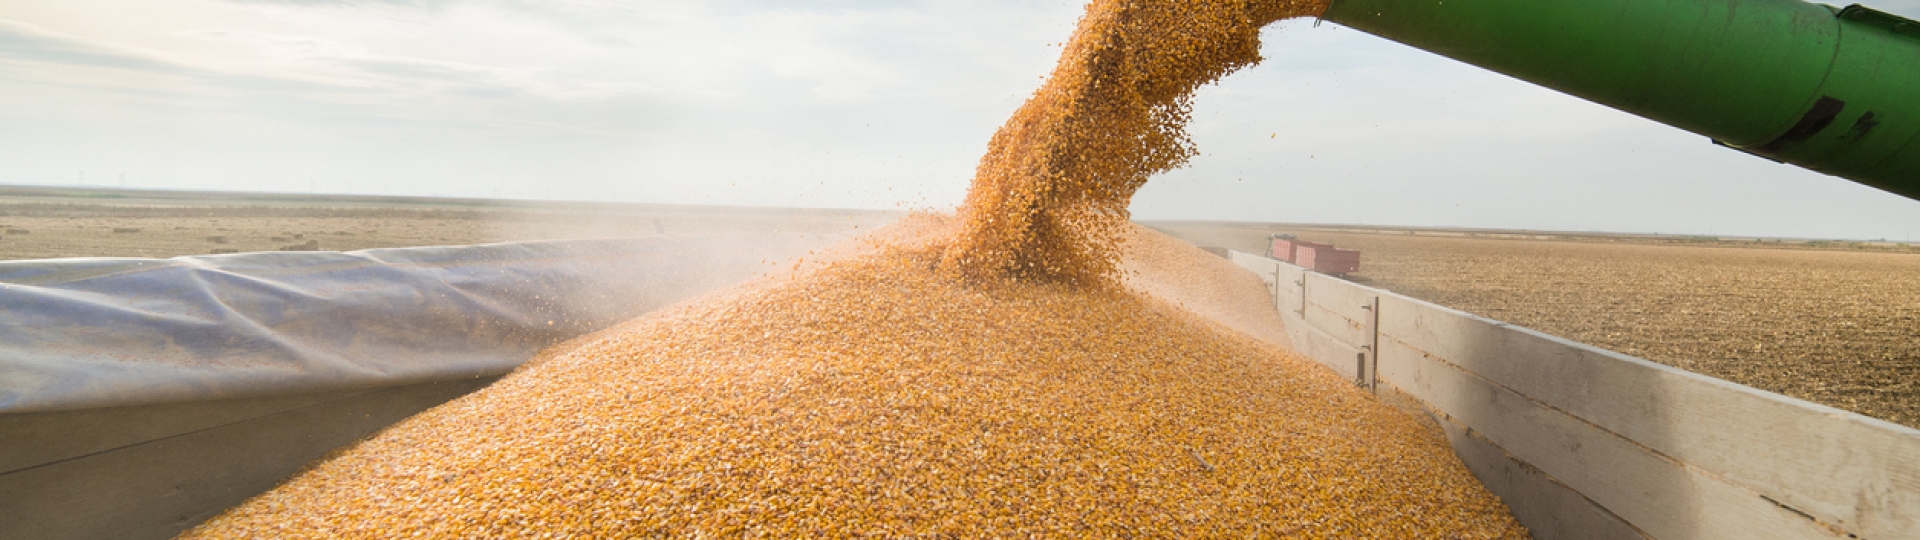 Conab estima novo recorde de 248 milhões de toneladas para produção de grãos